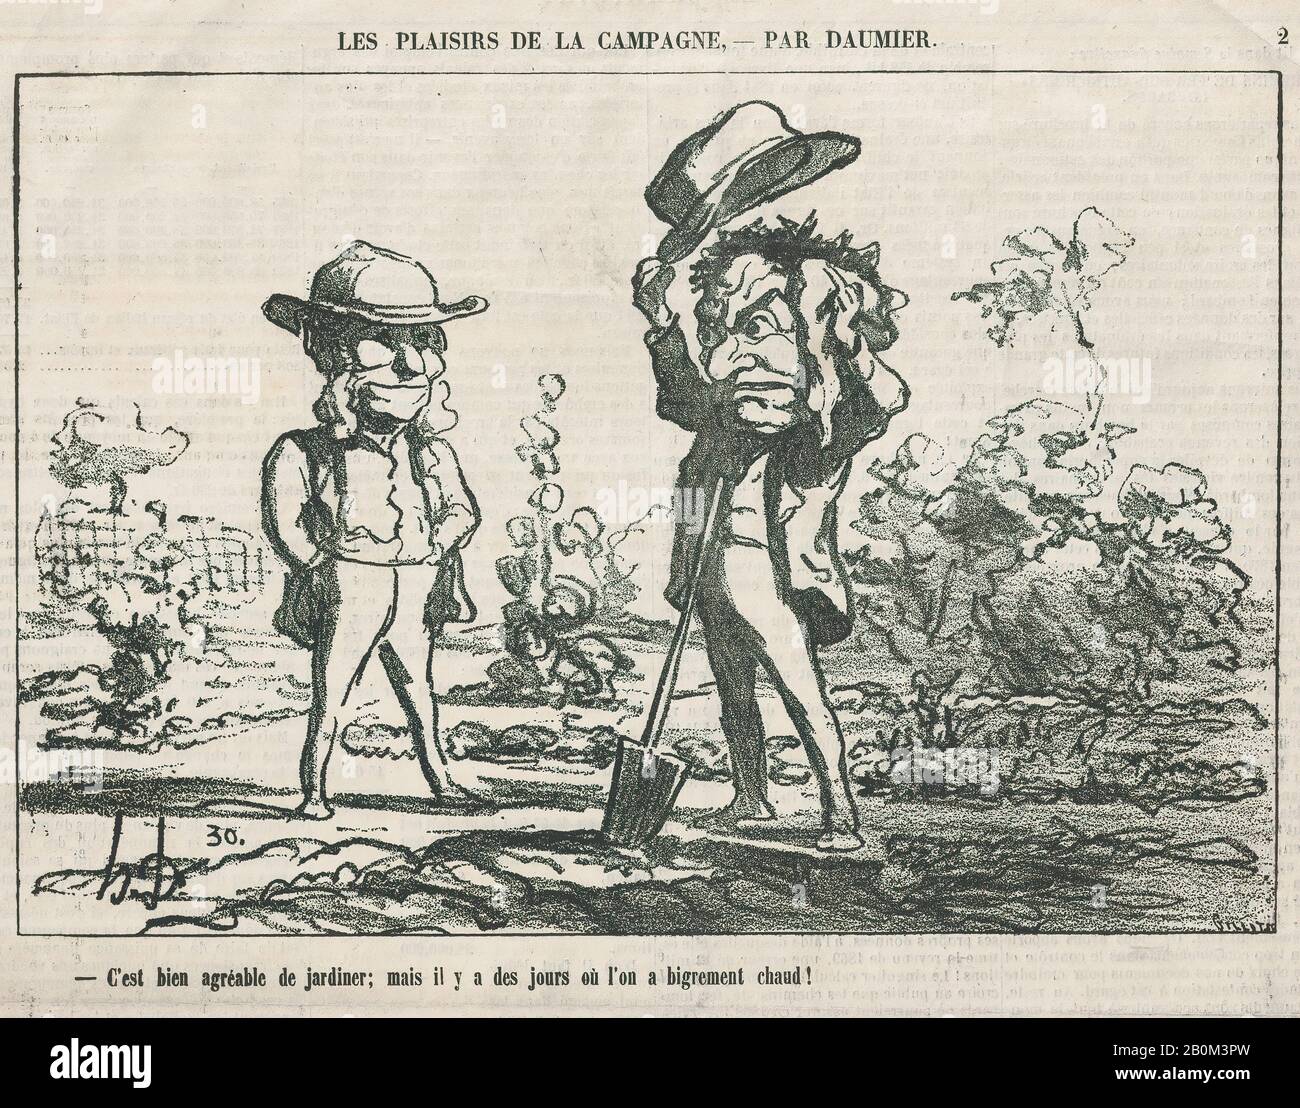 Honoré Daumier, Lavorare in giardino può essere divertente, ma ci sono giorni in cui è solo troppo caldo maledetto!, Si gioisce in pura felicità incontaminata quando si raccolgono le proprie mele, almeno finché non si rompe il collo, Dalle "gioie della vita contadina", pubblicate in le Charivari, 14 settembre 1865, "le gioie della vita contadina" (Les plaisirs de la campagne), Honoré Daumier (francese, Marsiglia 1808–1879 Valmondois), 14 settembre 1865, litografia su carta da giornale; secondo stato di due (Delteil), immagine: 9 13/16 × 8. (25 × 21,6 cm), foglio: 14 3/4 × 11 5/16 in. (37,5 × 28,8 cm), stampe Foto Stock